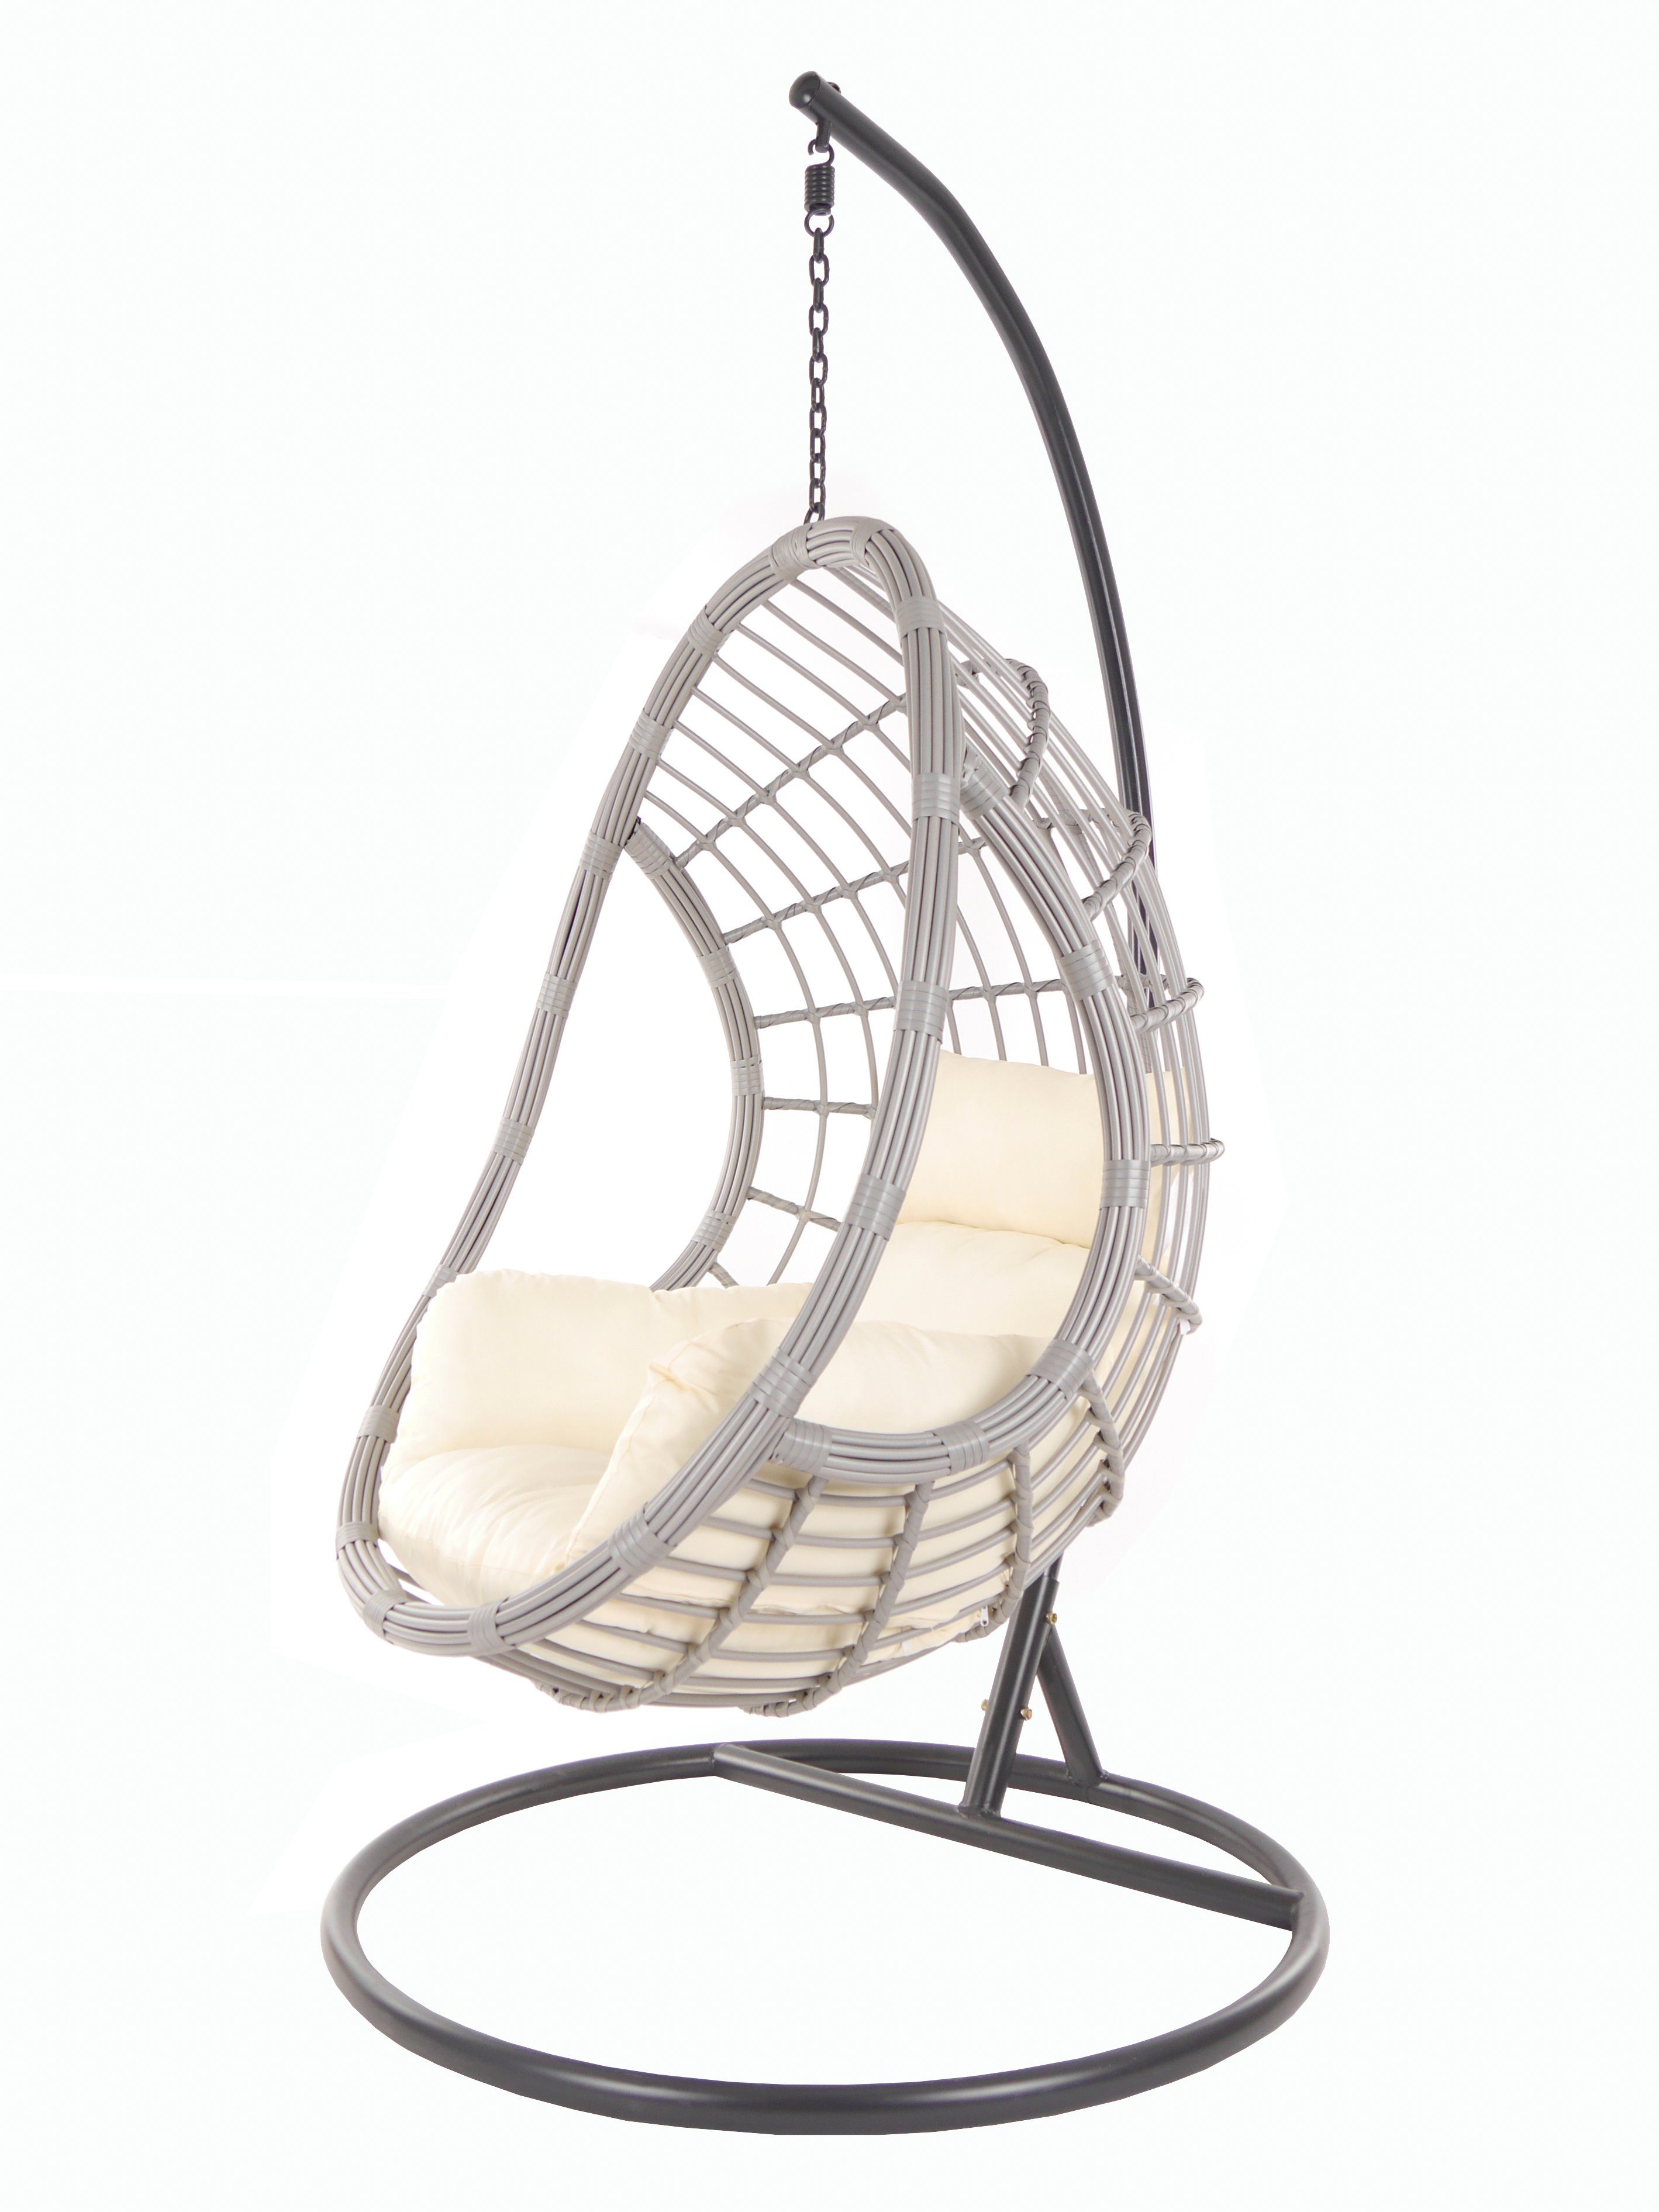 KIDEO Hängesessel PALMANOVA lightgrey, Schwebesessel mit Gestell und Kissen, Swing Chair, Loungemöbel elfenbein (0050 ivory)